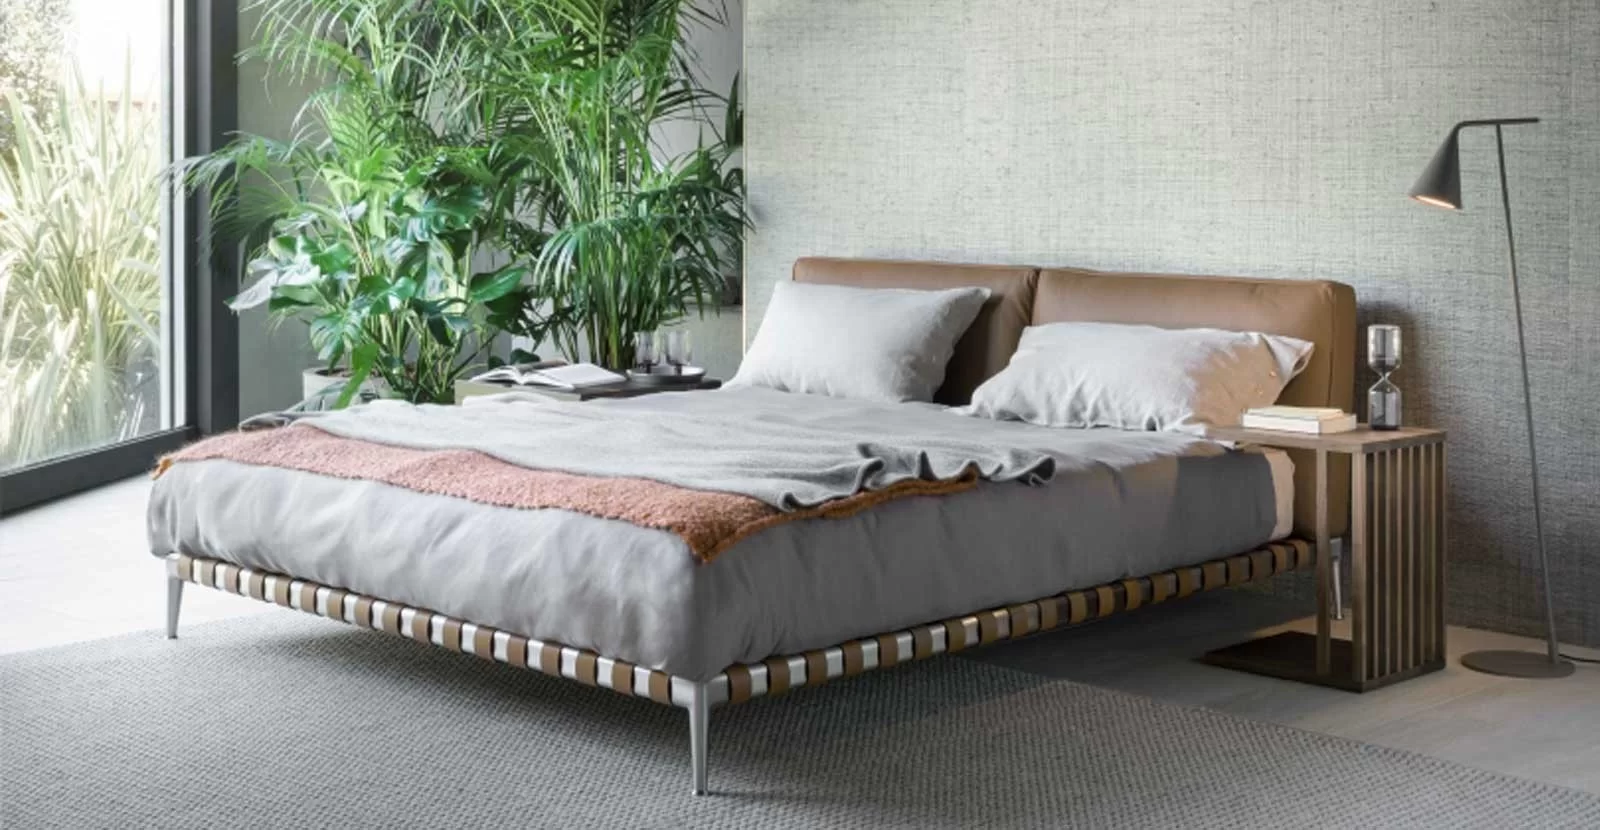 Beds for Sale | Online Luxury & Designer Beds